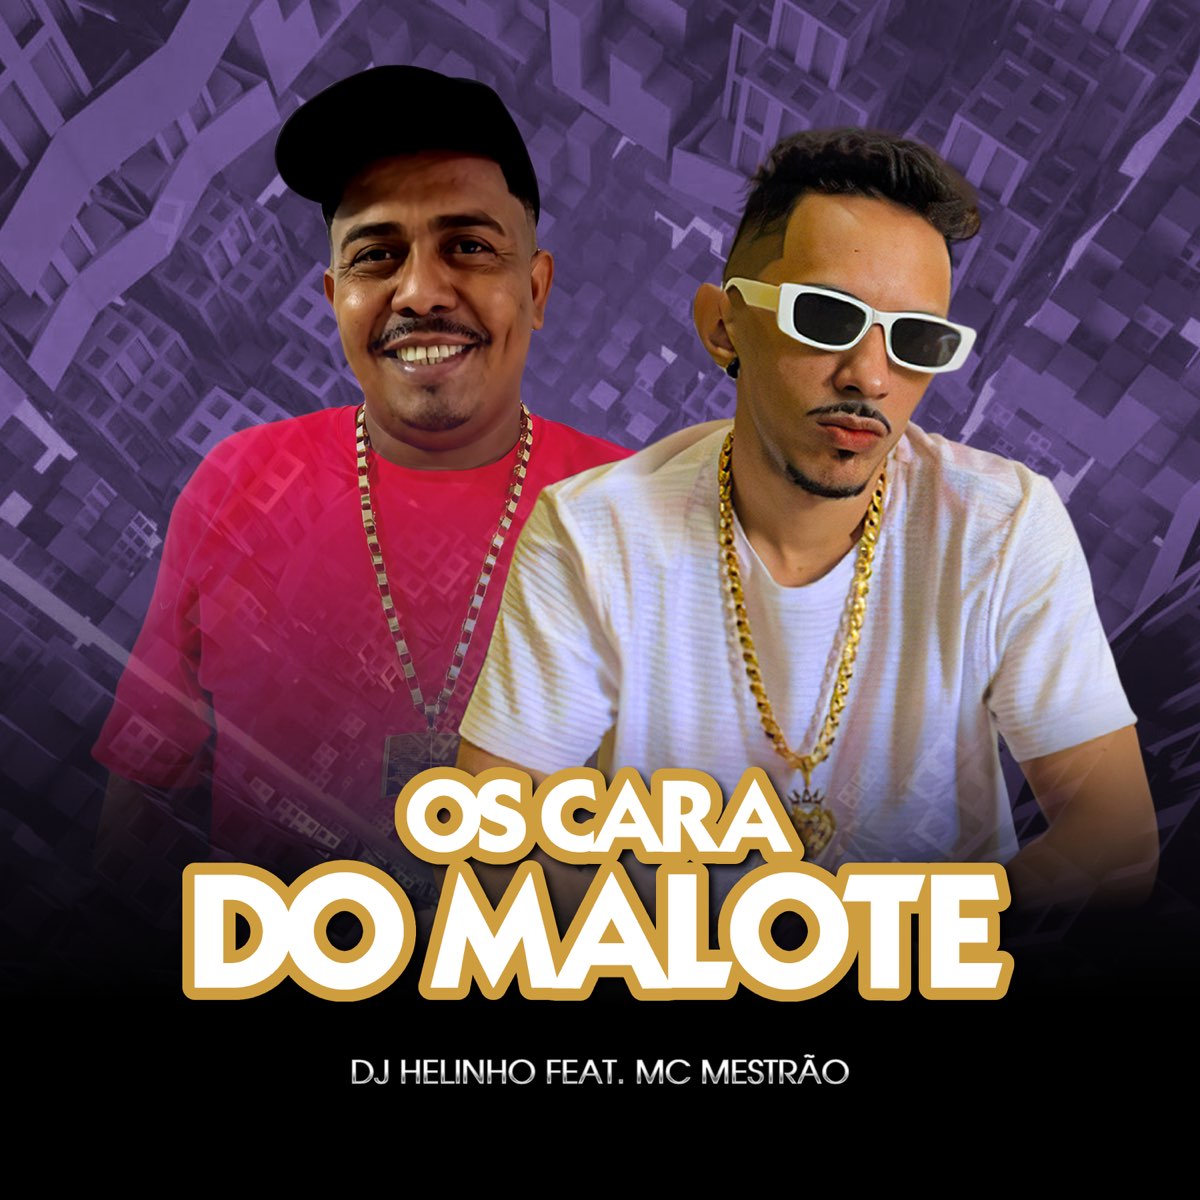 Soca Fofo da Quebrada - Single - Album by DJ Helinho & MC Gauchinho - Apple  Music